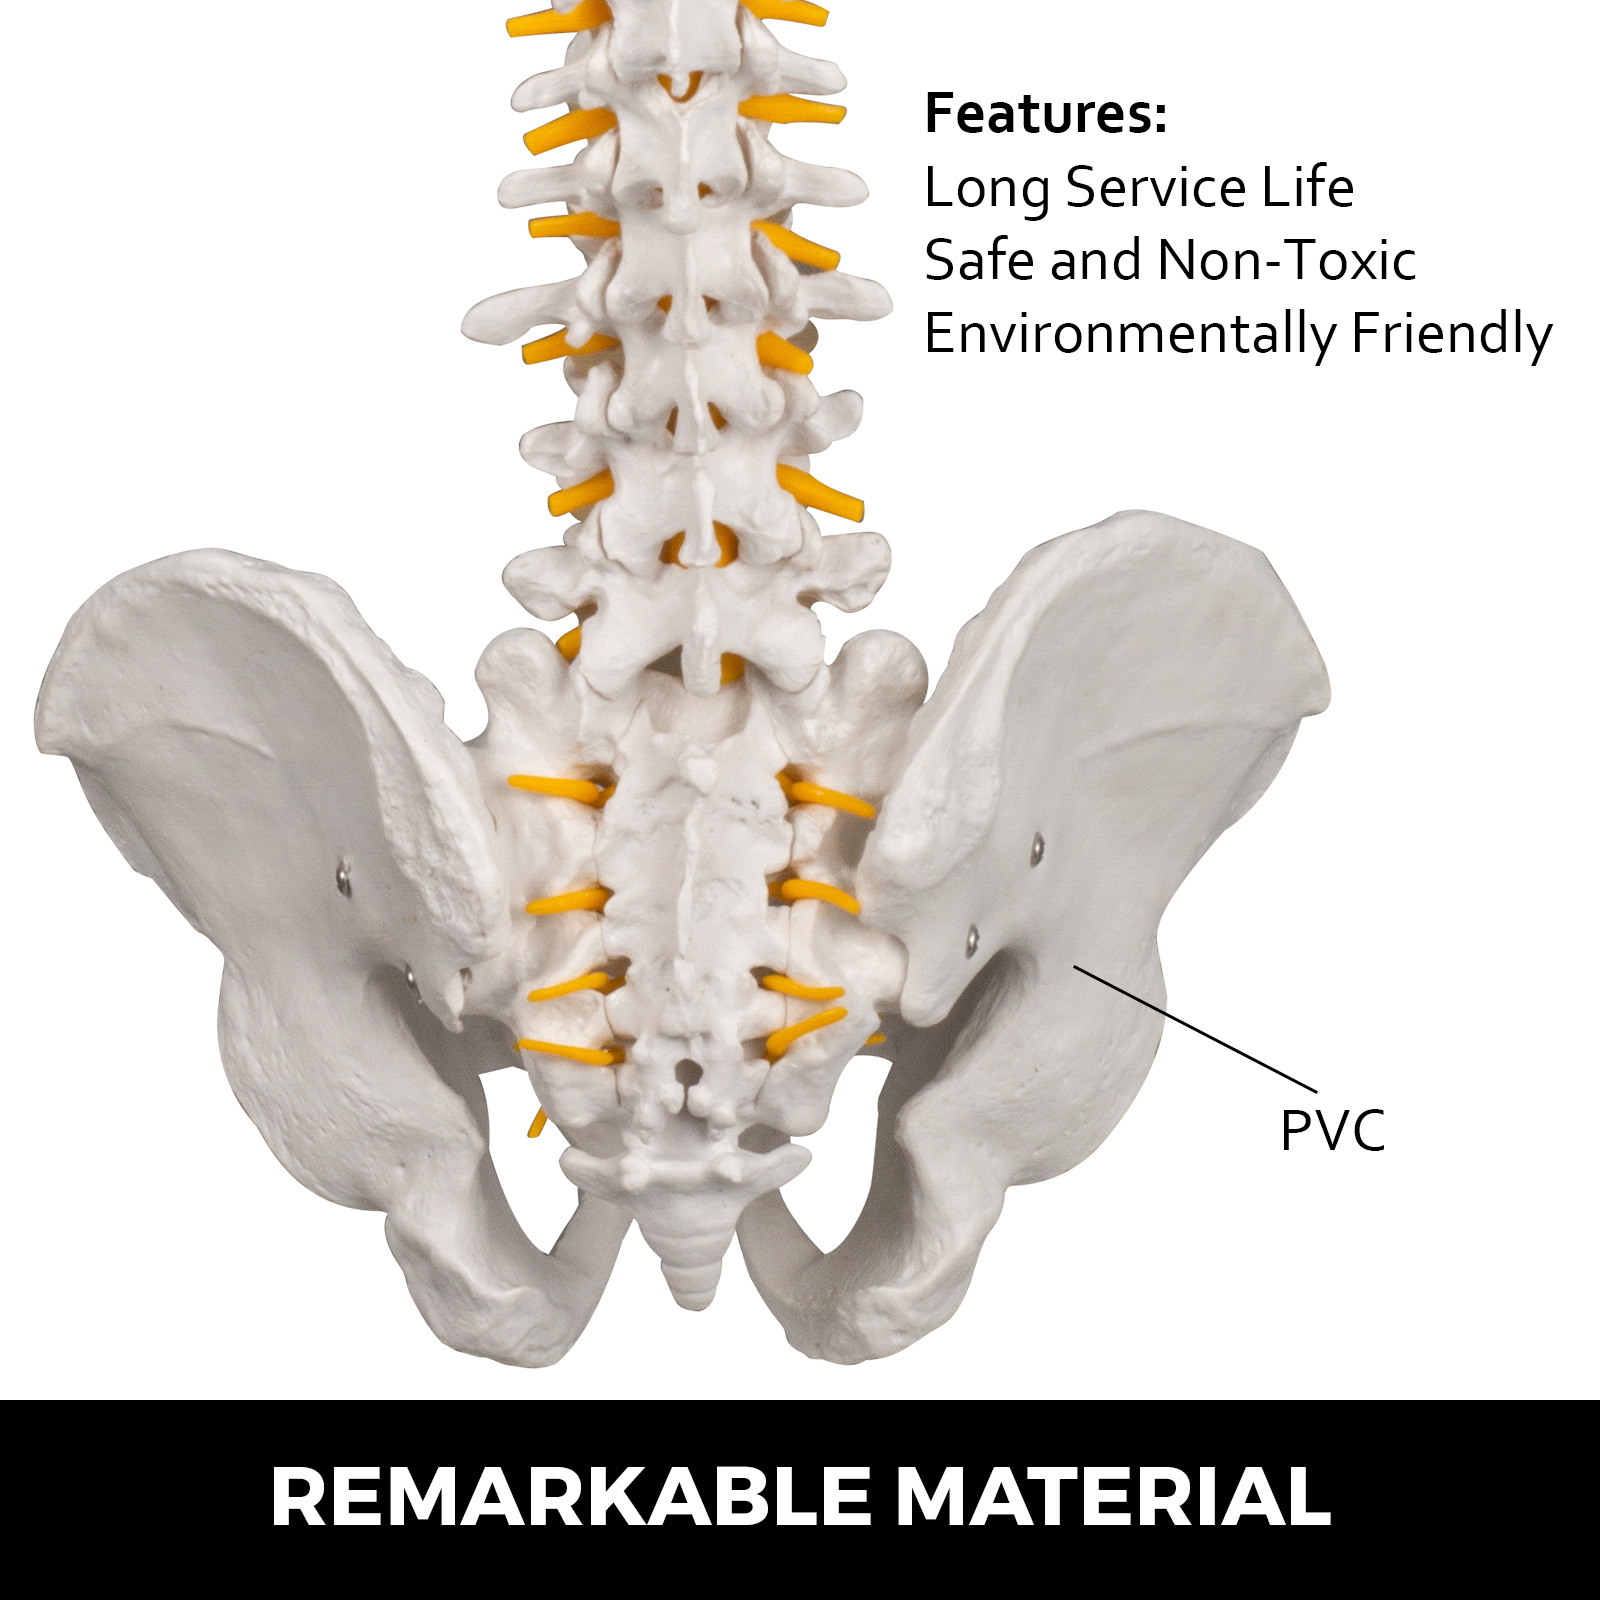 Human Spine Model, Life Size 34 Inch Spine Model, Flexible Spine Anatomical  Model with Vertebrae, Cervical Spine, Lumbar Spine